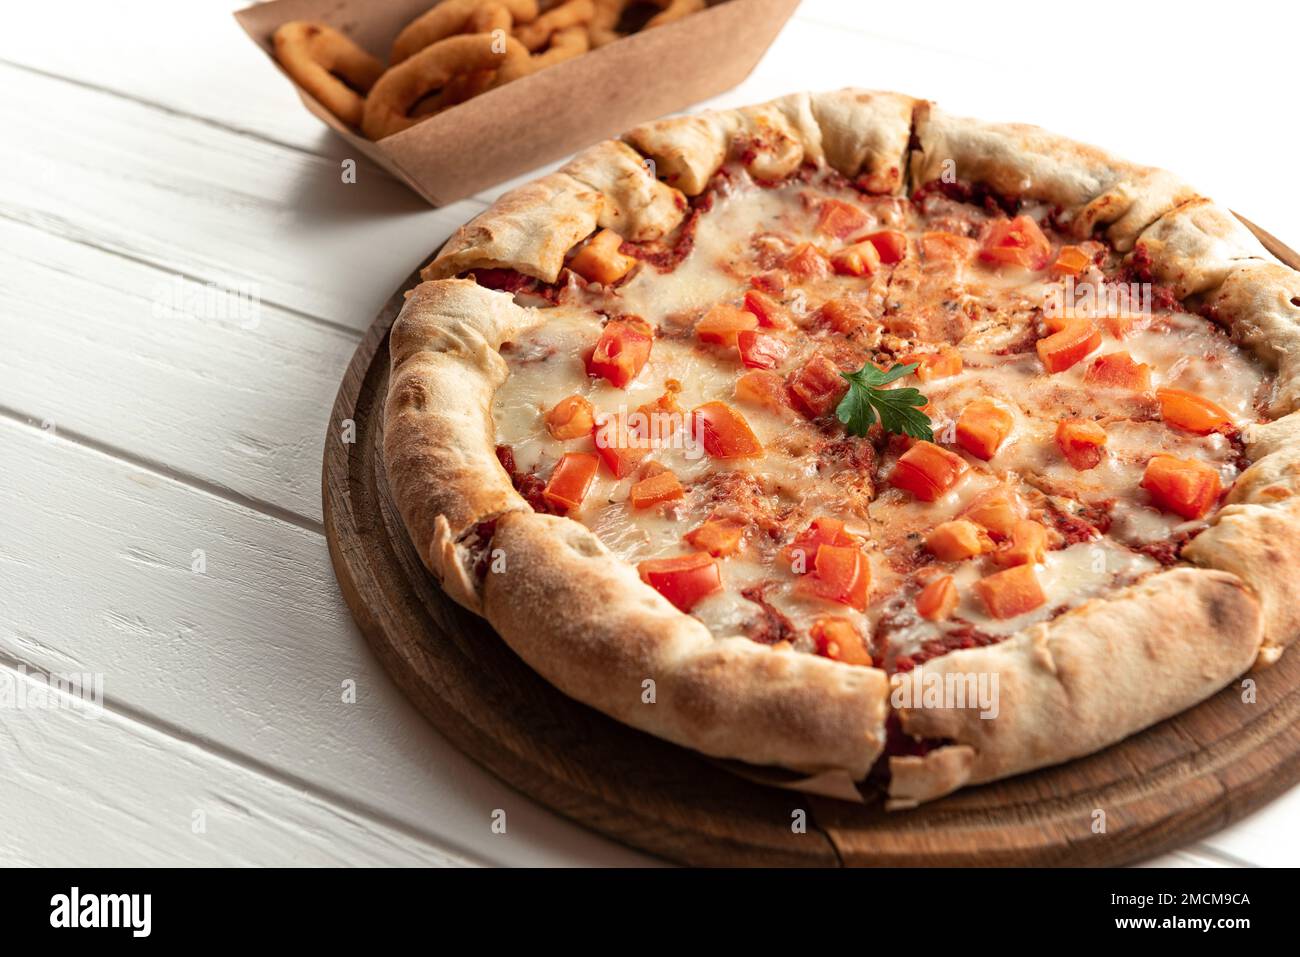 Margarita Pizza auf dem Weißen, Draufsicht. Margarita Pizza mit Tomaten, Basilikum und Mozzarella Käse Stockfoto